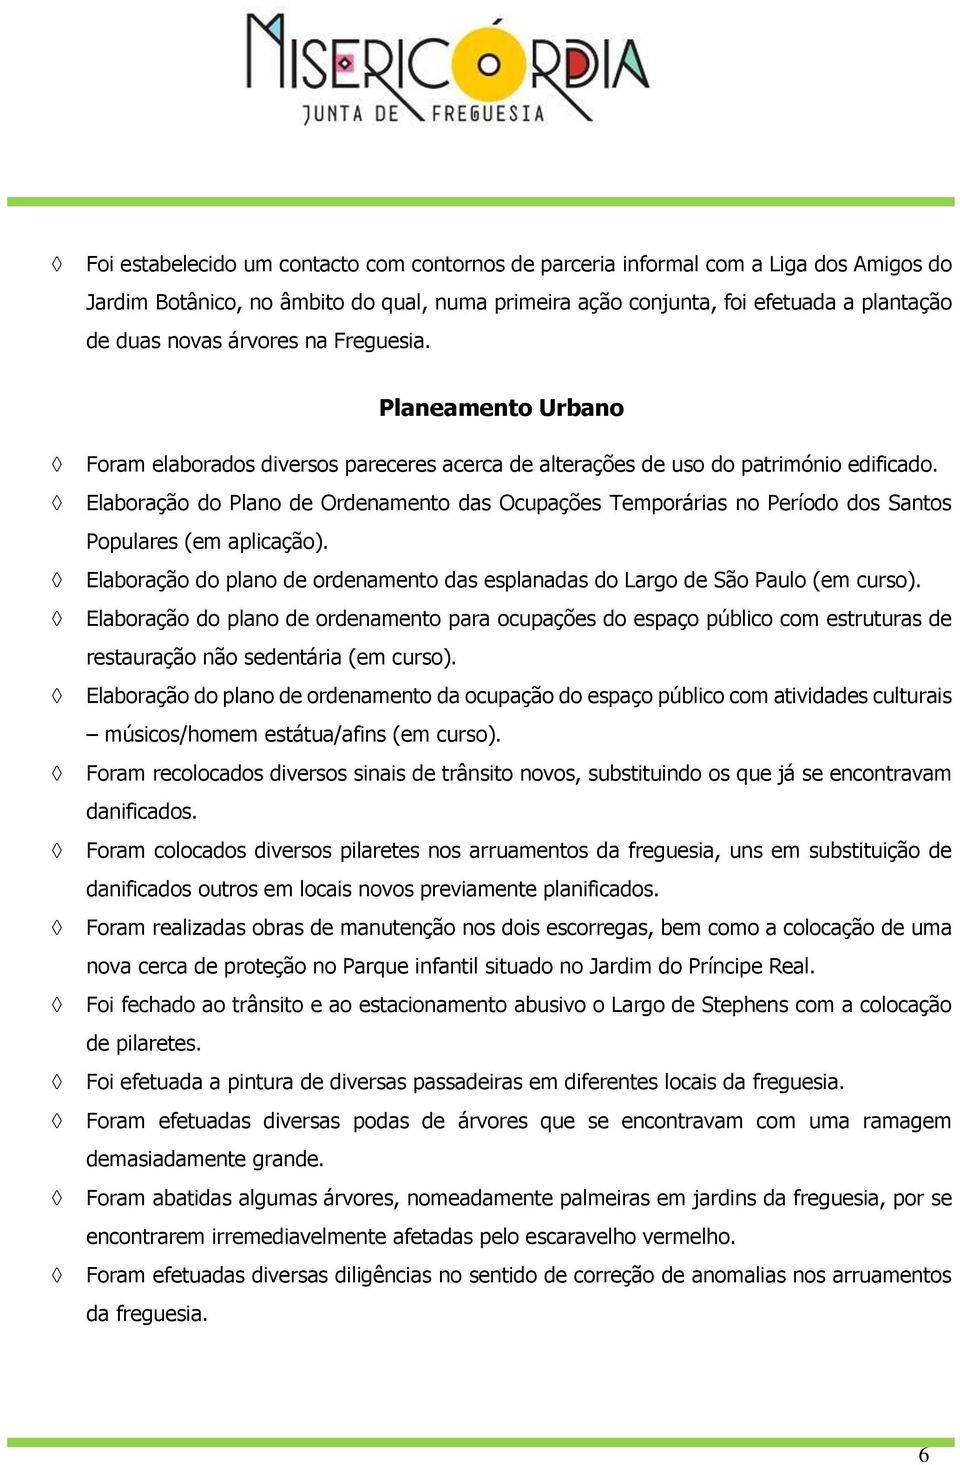 Elaboração do Plano de Ordenamento das Ocupações Temporárias no Período dos Santos Populares (em aplicação). Elaboração do plano de ordenamento das esplanadas do Largo de São Paulo (em curso).